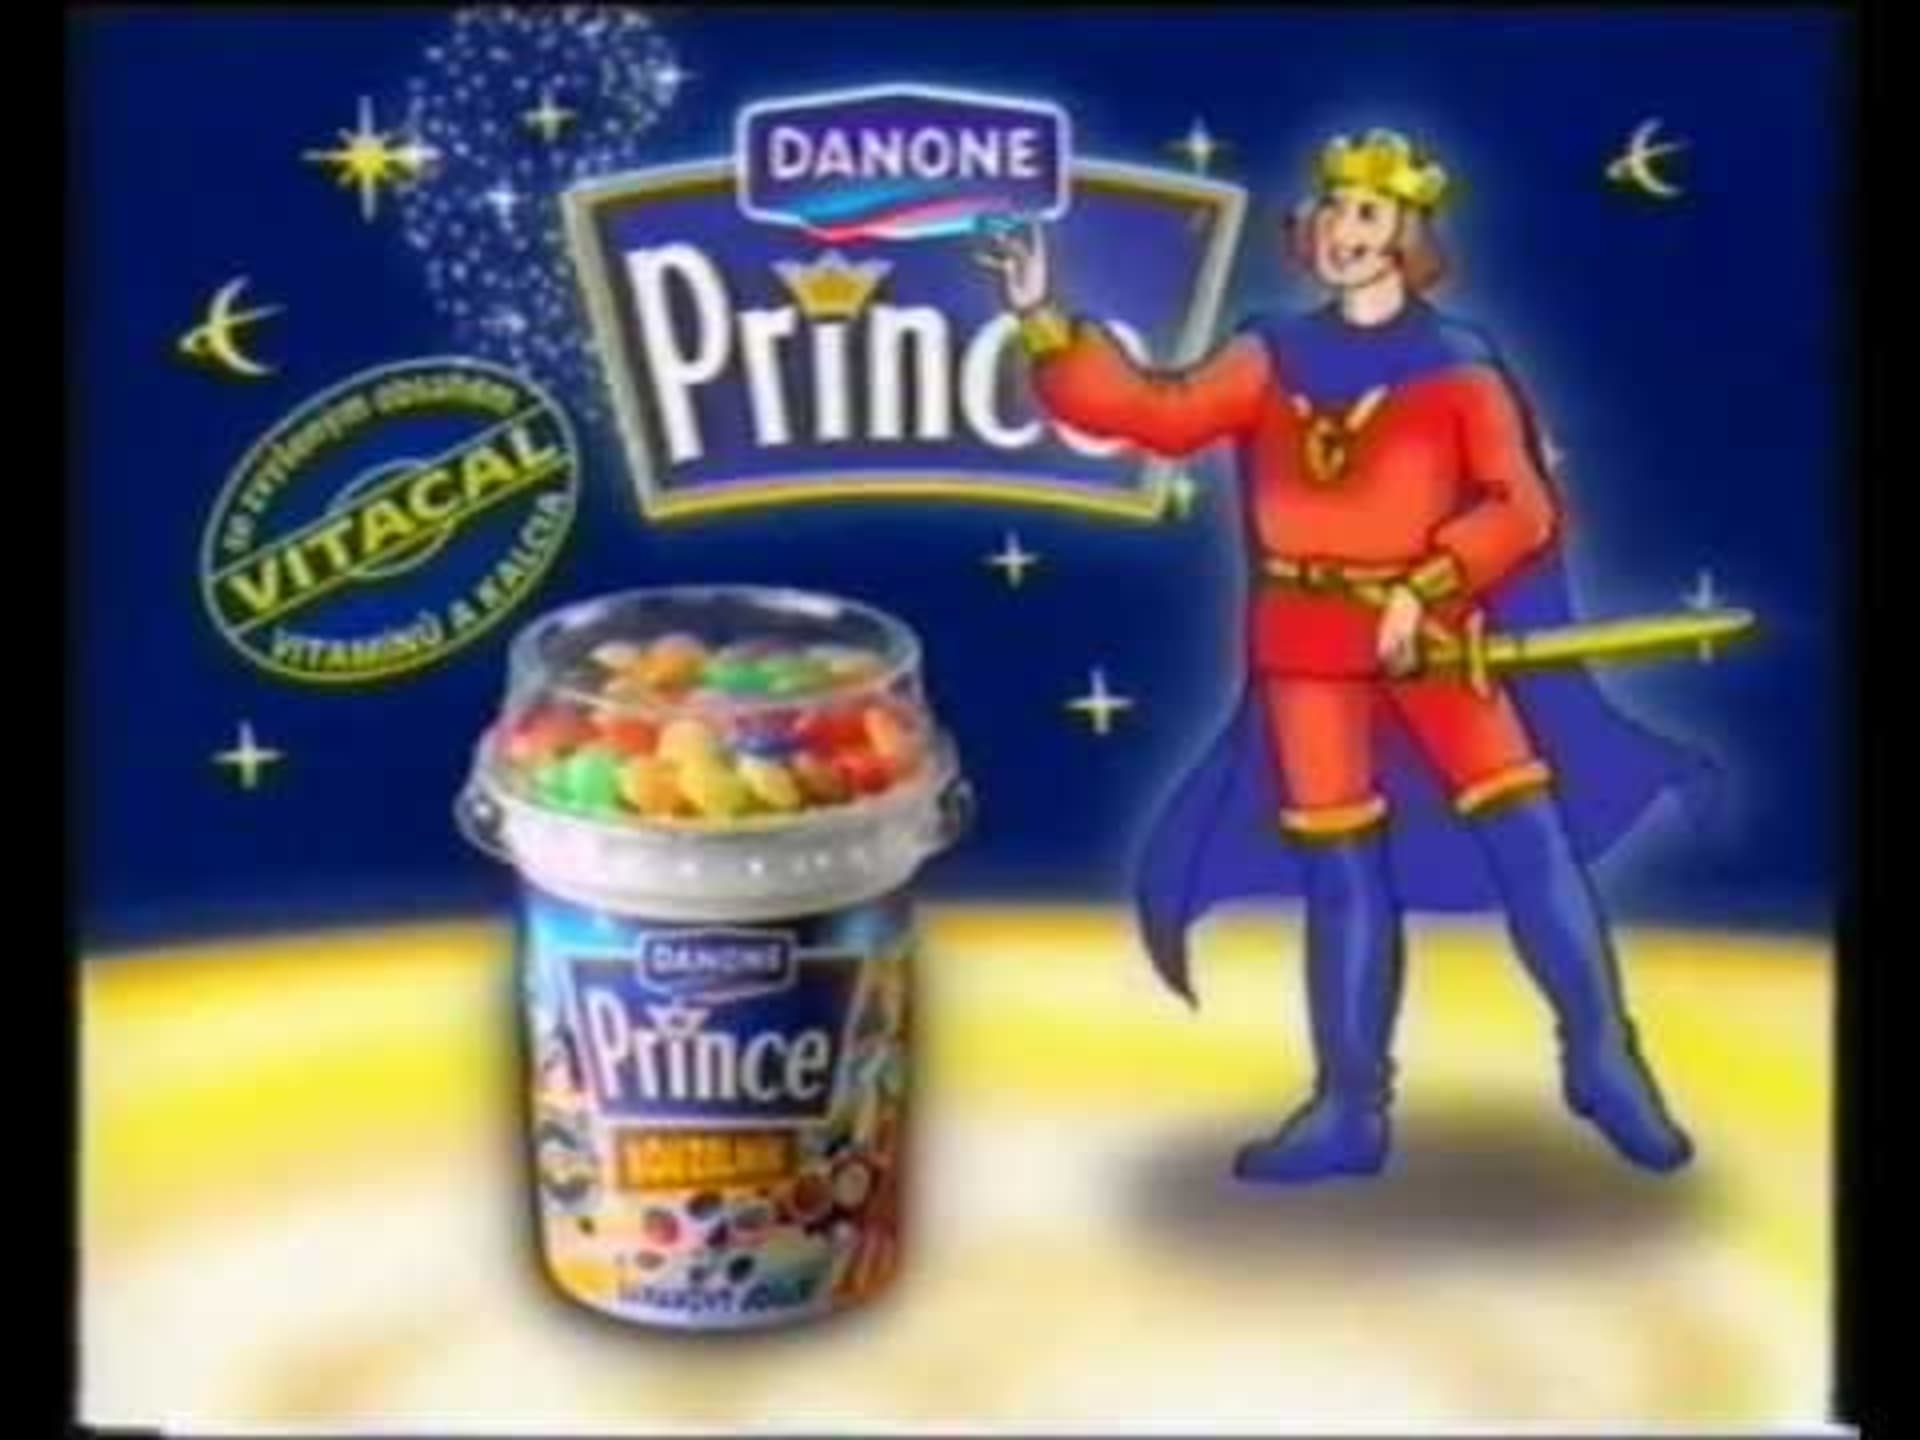 Jogurt Danone Prince měl speciální čokoládové kuličky, které jogurtu příjemně roztály